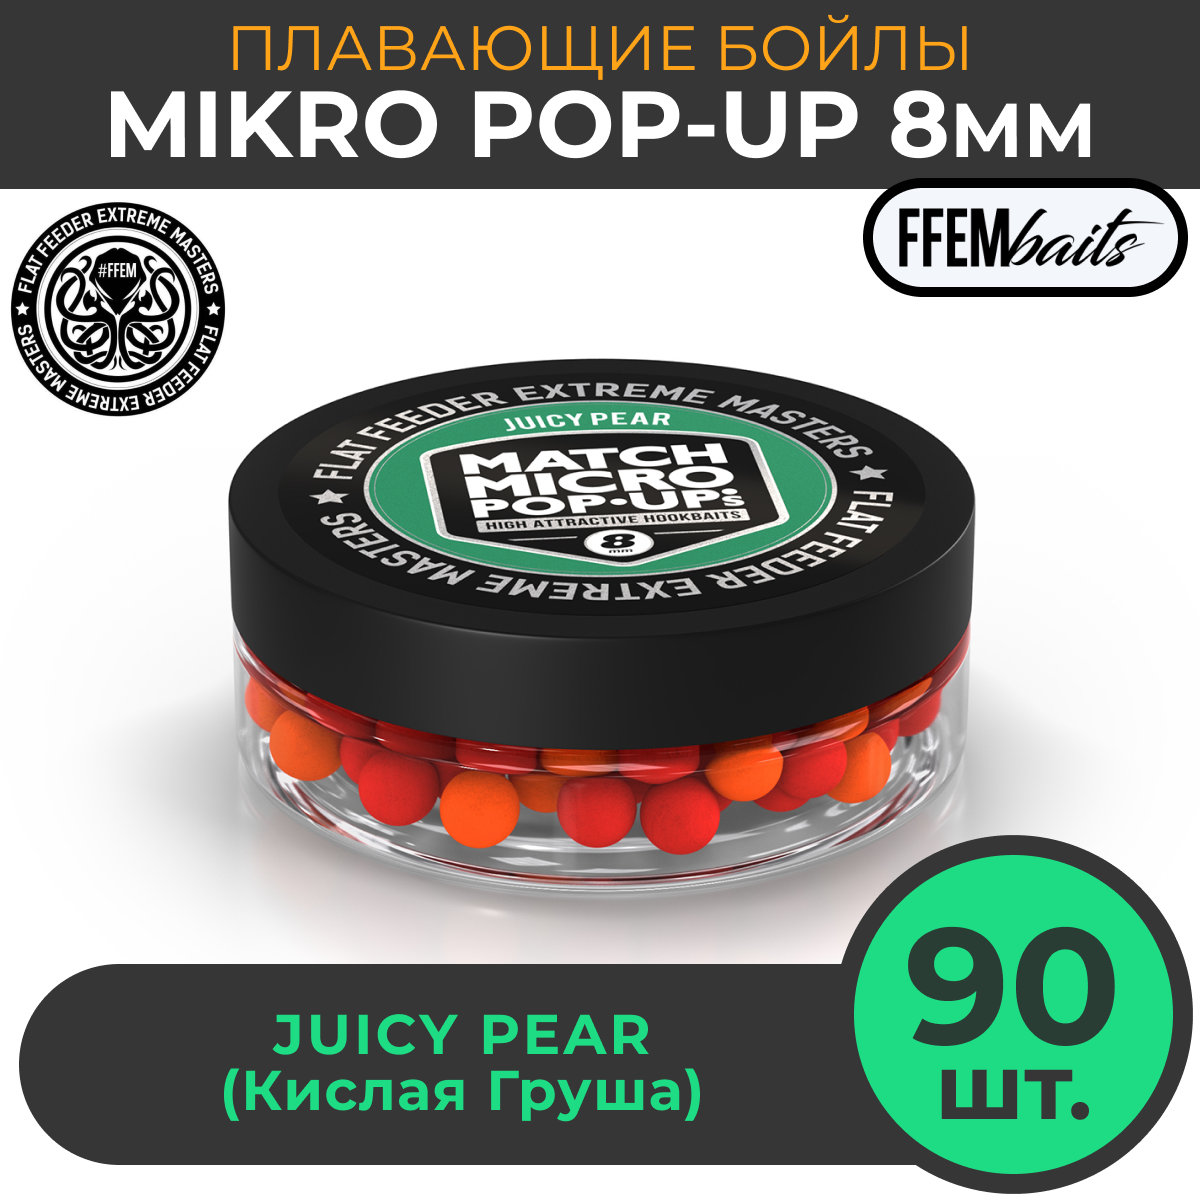 Плавающие бойлы Match Micro POP-UP 8 мм, насадочные поп-ап / FFEM Pop-Up Micro Juicy Pear 8mm сочная груша